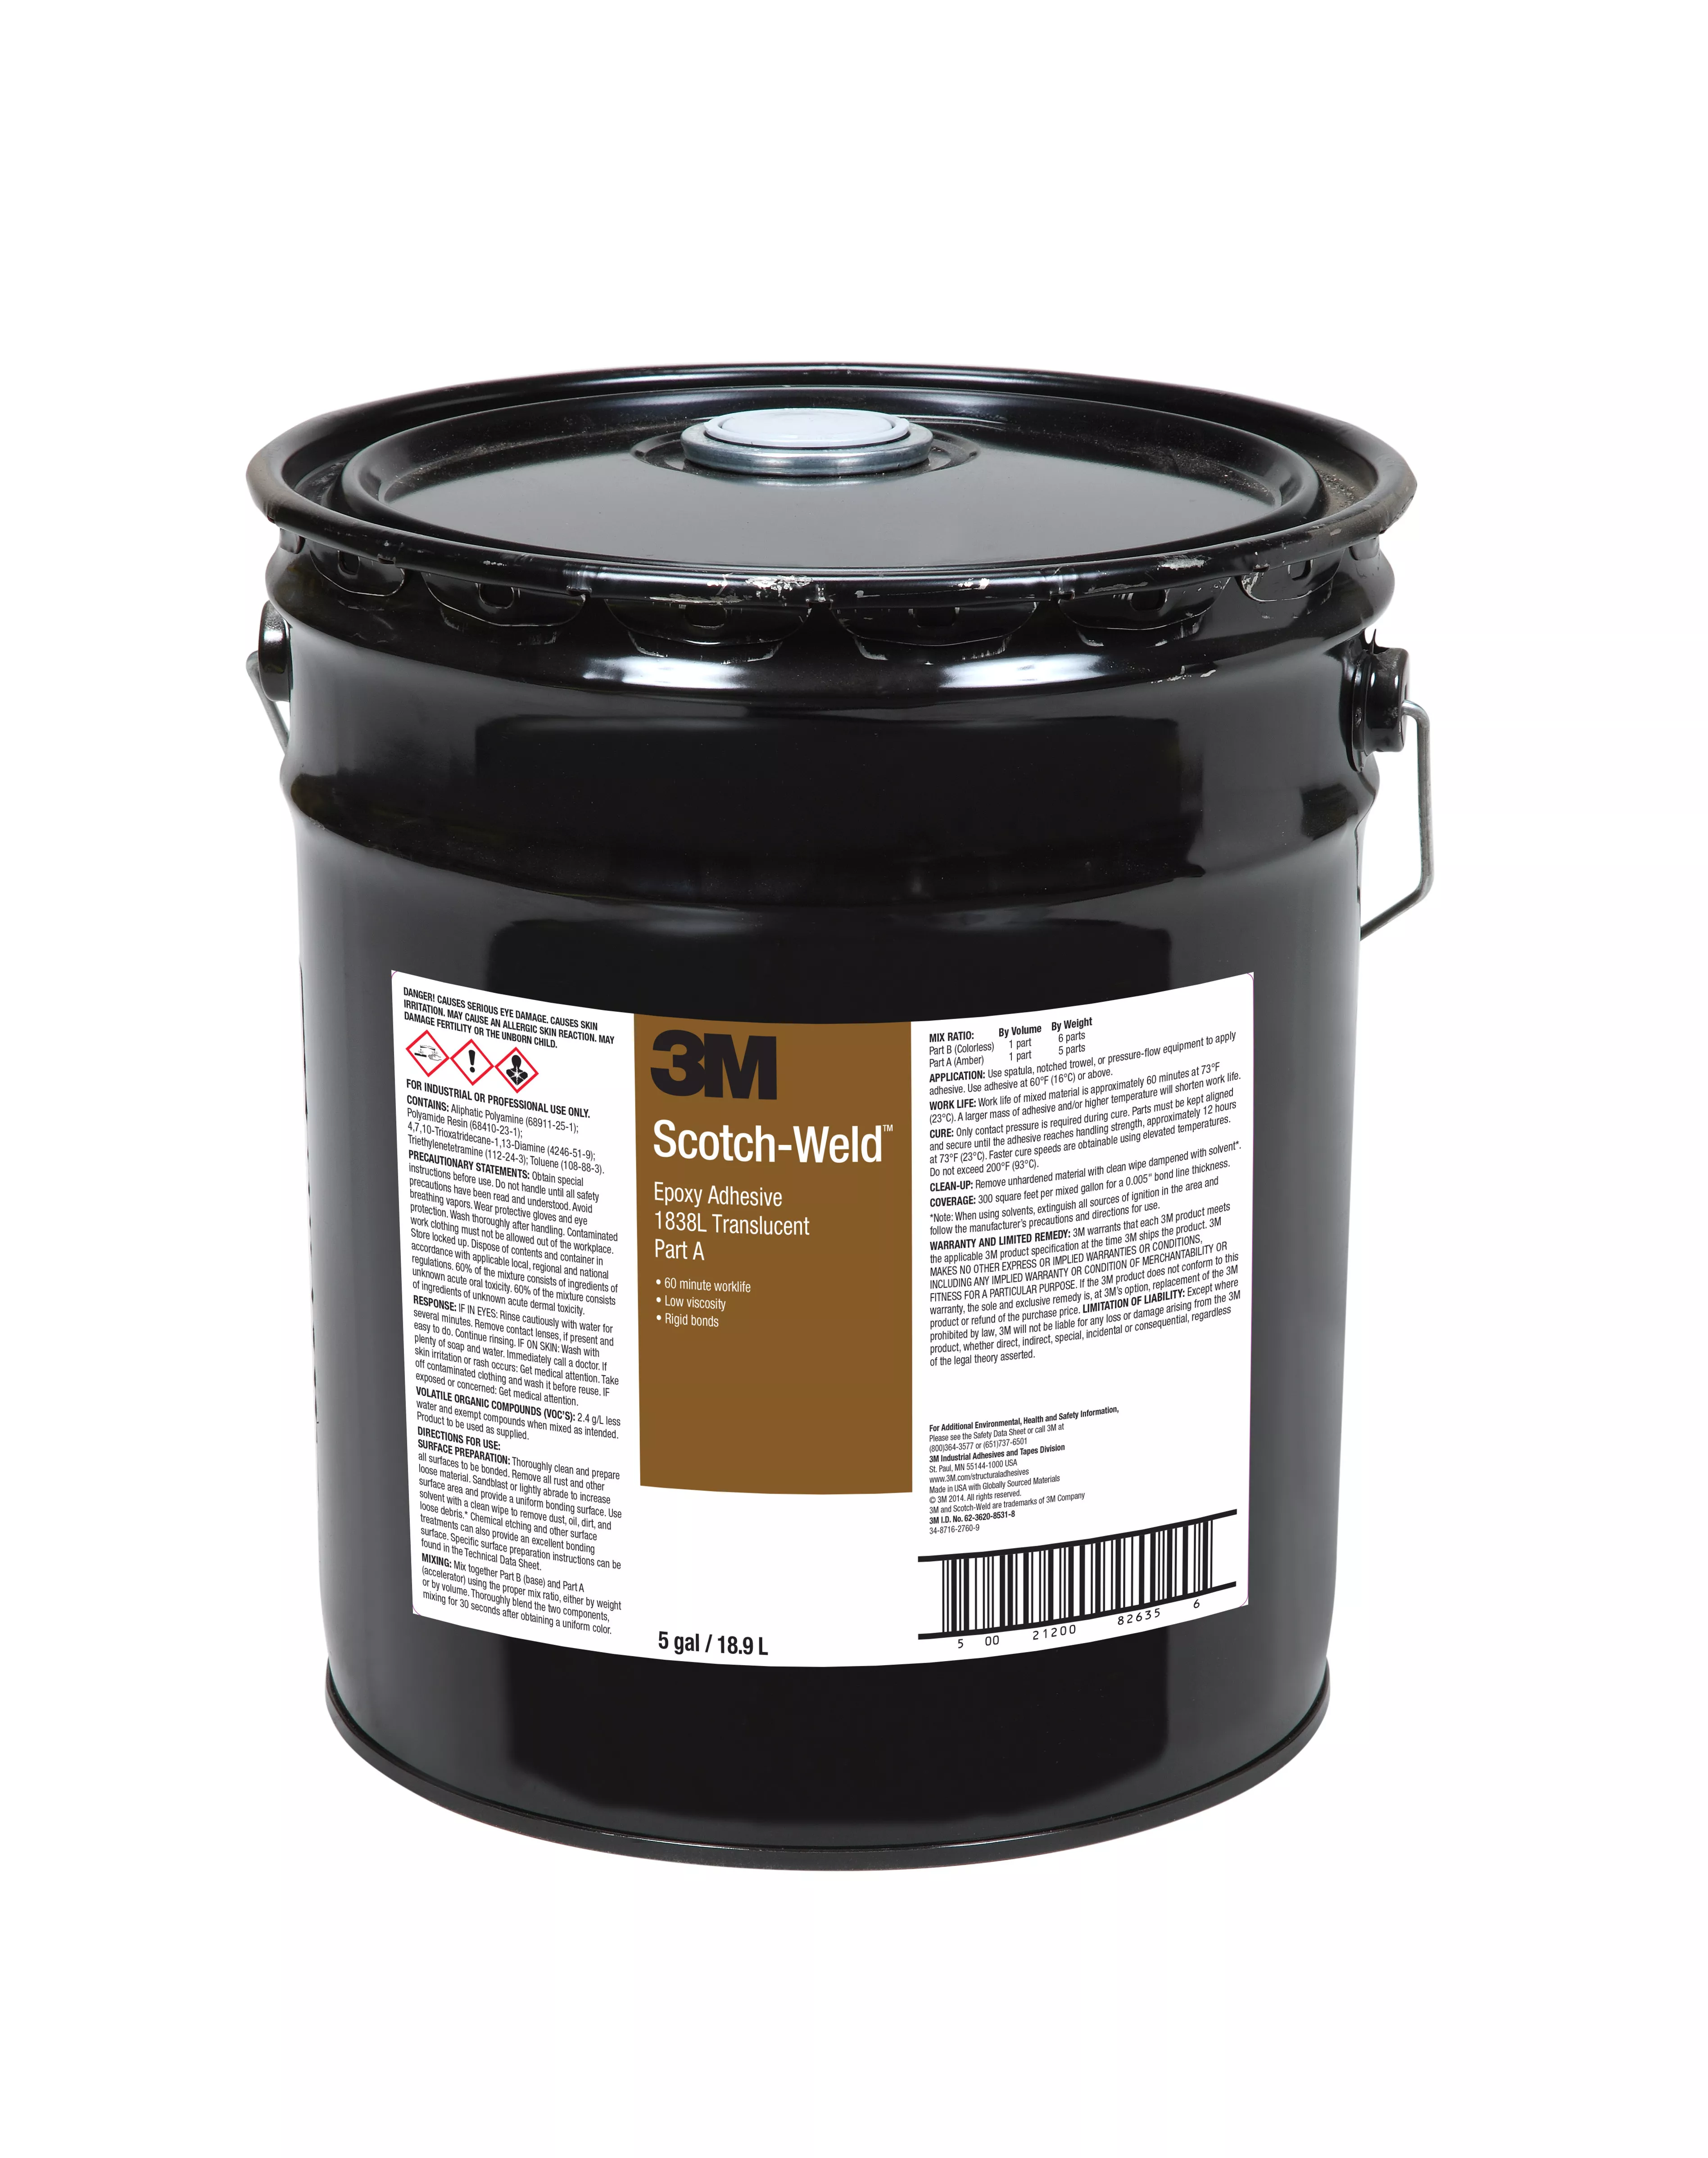 3M™ Scotch-Weld™ Epoxy Adhesive 1838L, Translucent, Part A, 5 Gallon
(Pail), Drum